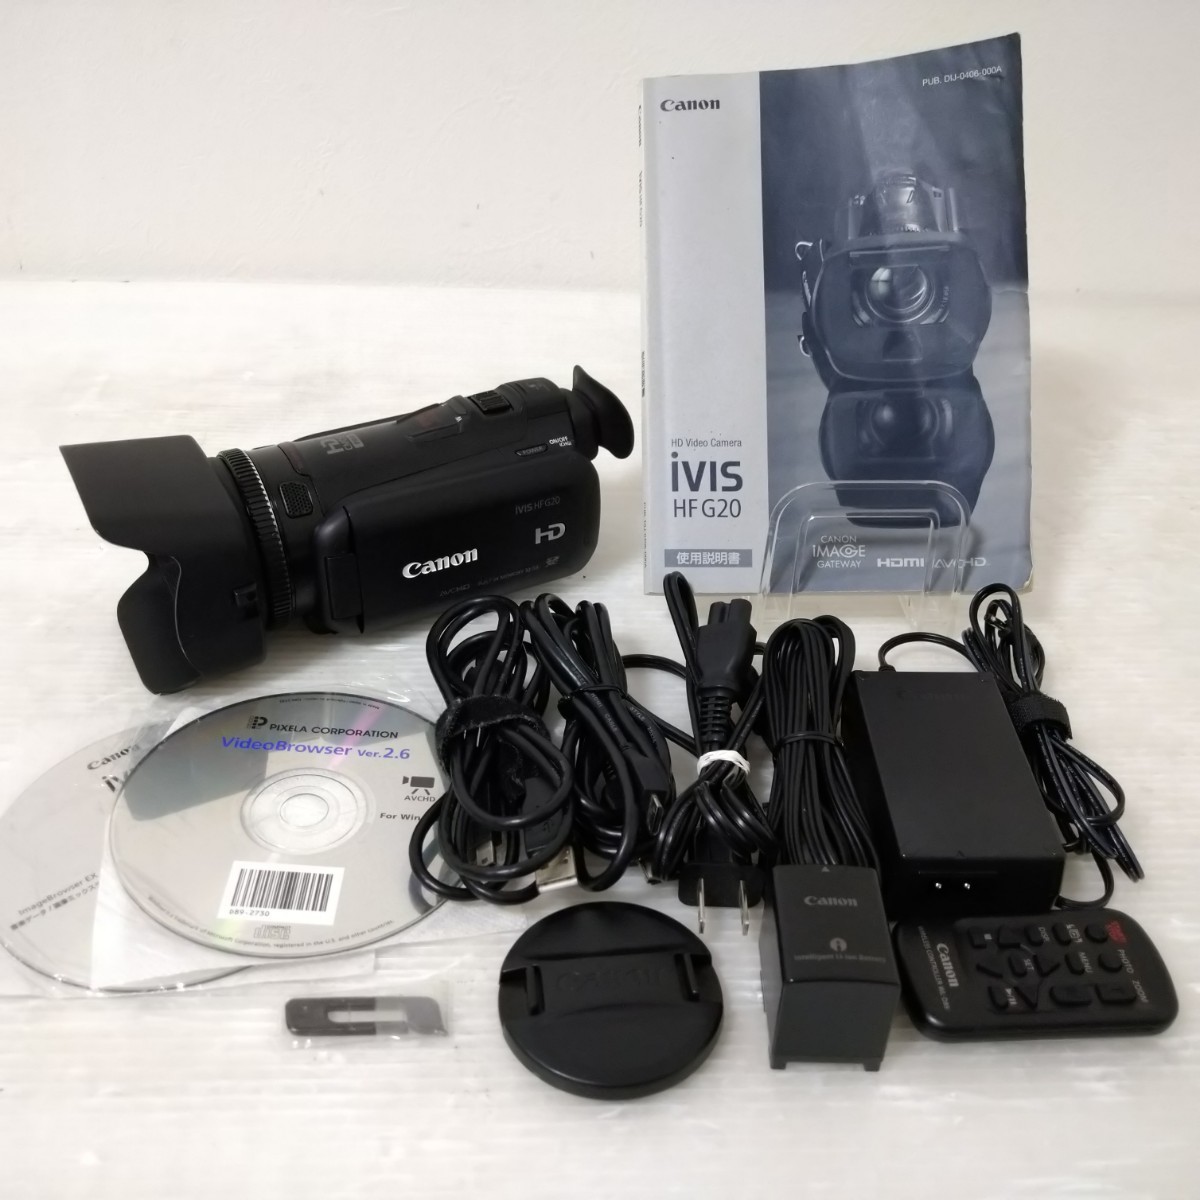 Canon iVIS HF G20 HD Video Camera キャノン HDビデオカメラ デジタル ビデオカメラ 内蔵HD32GB キヤノン デジカメ_画像1